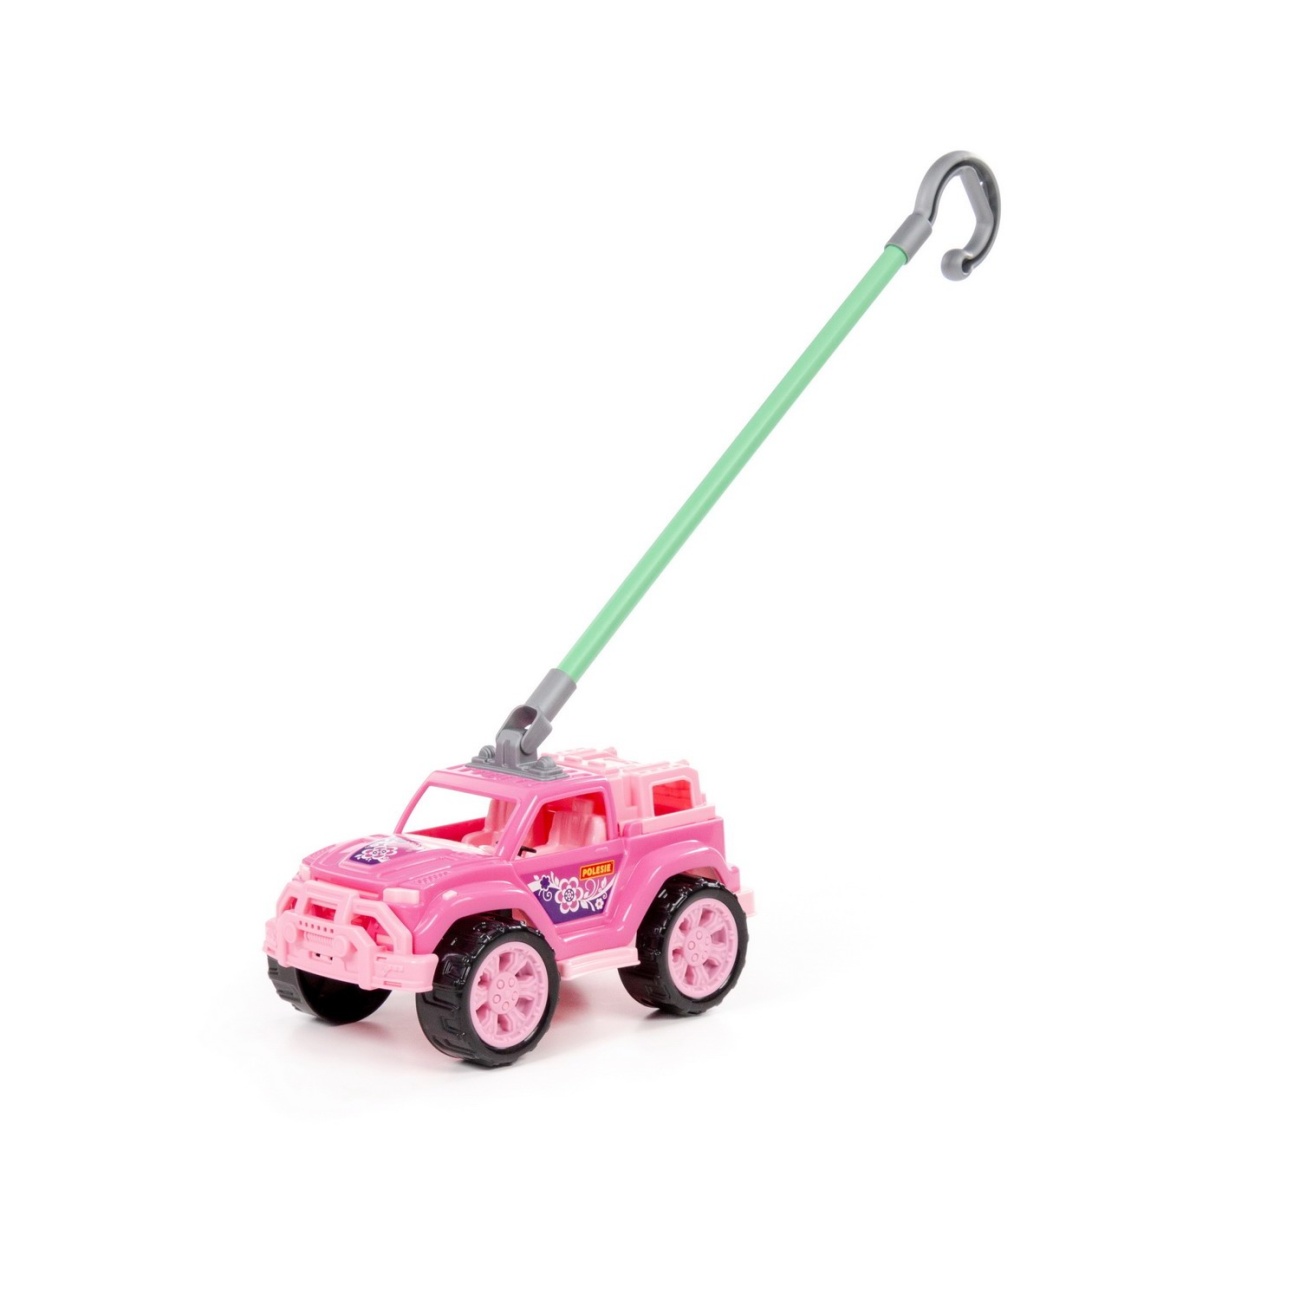 Игрушка-каталка Полесье автомобиль Легионер с ручкой (розовый) П-63905 каталка игрушка полесье автомобиль легионер с ручкой